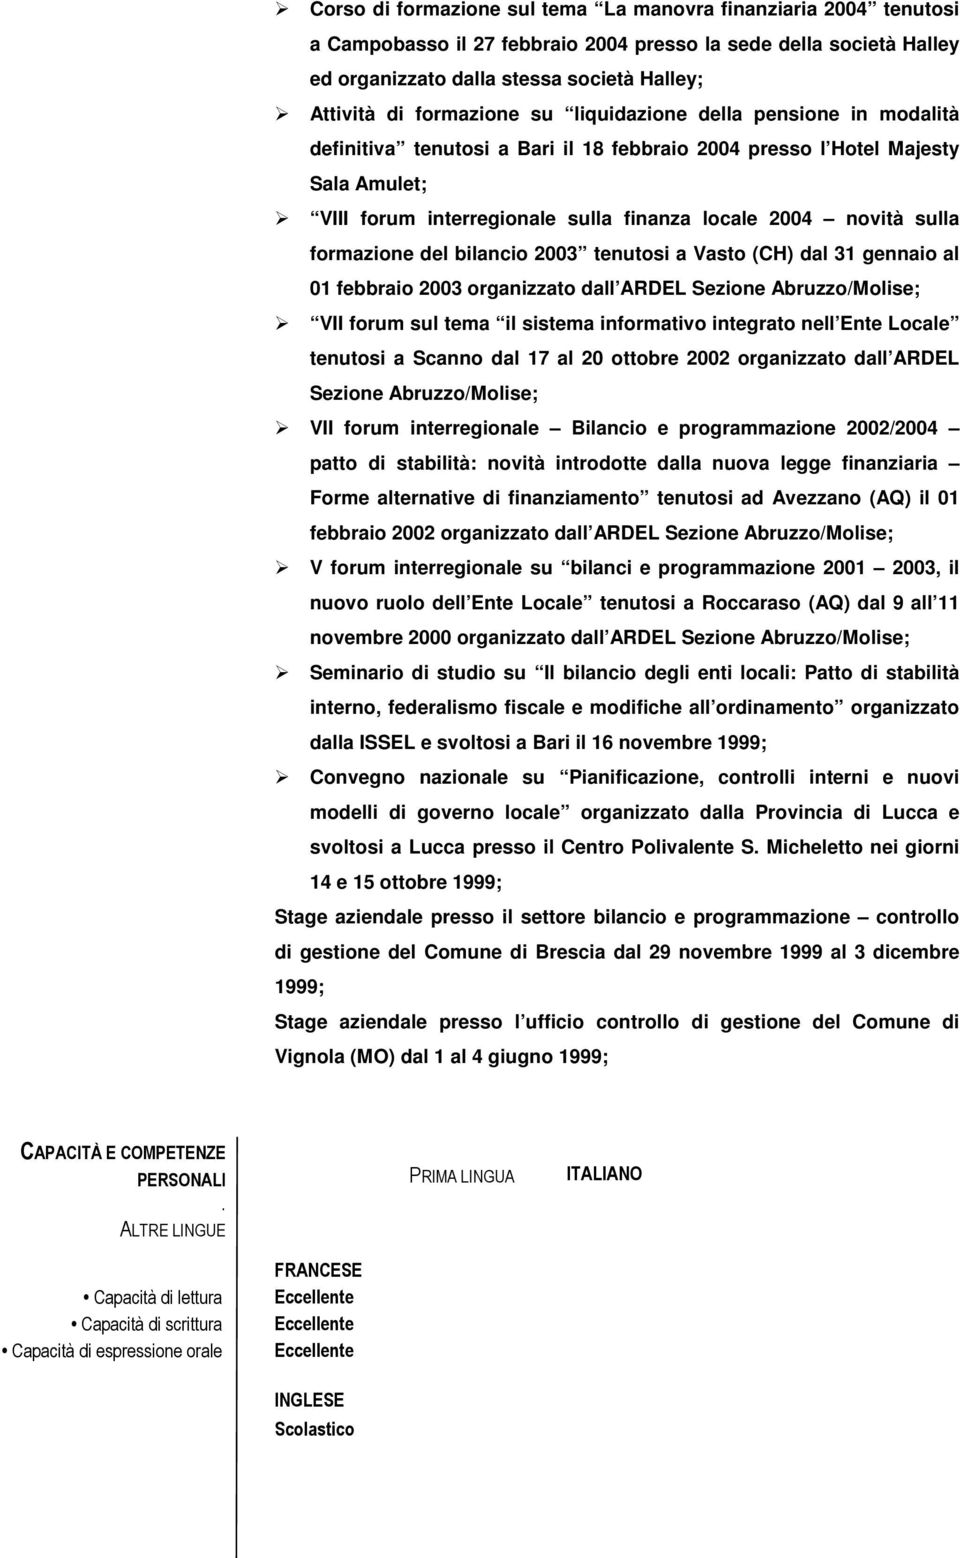 sulla formazione del bilancio 2003 tenutosi a Vasto (CH) dal 31 gennaio al 01 febbraio 2003 organizzato dall ARDEL Sezione Abruzzo/Molise; VII forum sul tema il sistema informativo integrato nell